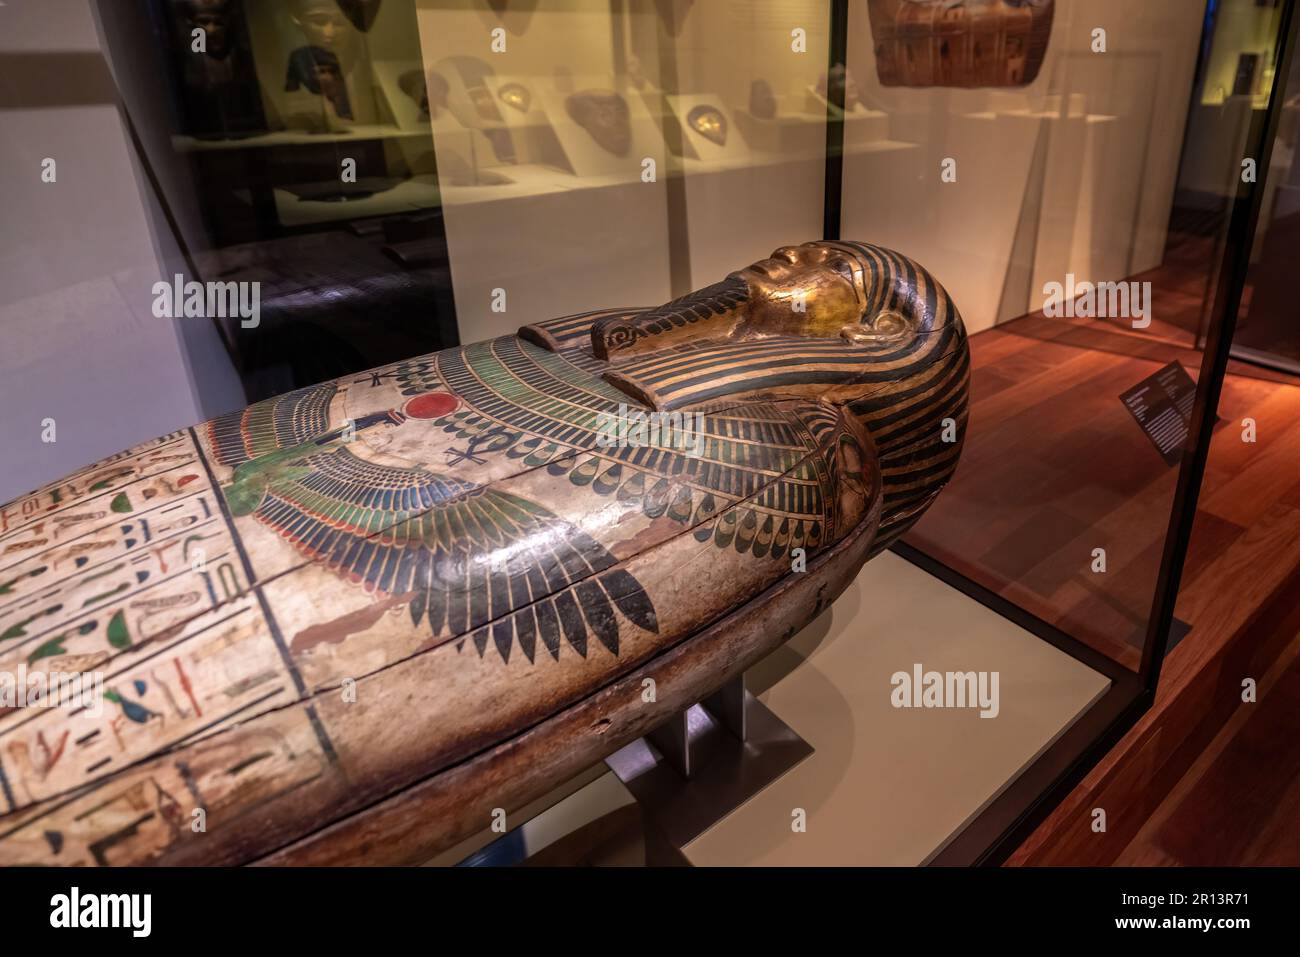 Bara di Taremetchenbastet - antico sarcofago egiziano al Museo Archeologico Nazionale - Madrid, Spagna Foto Stock